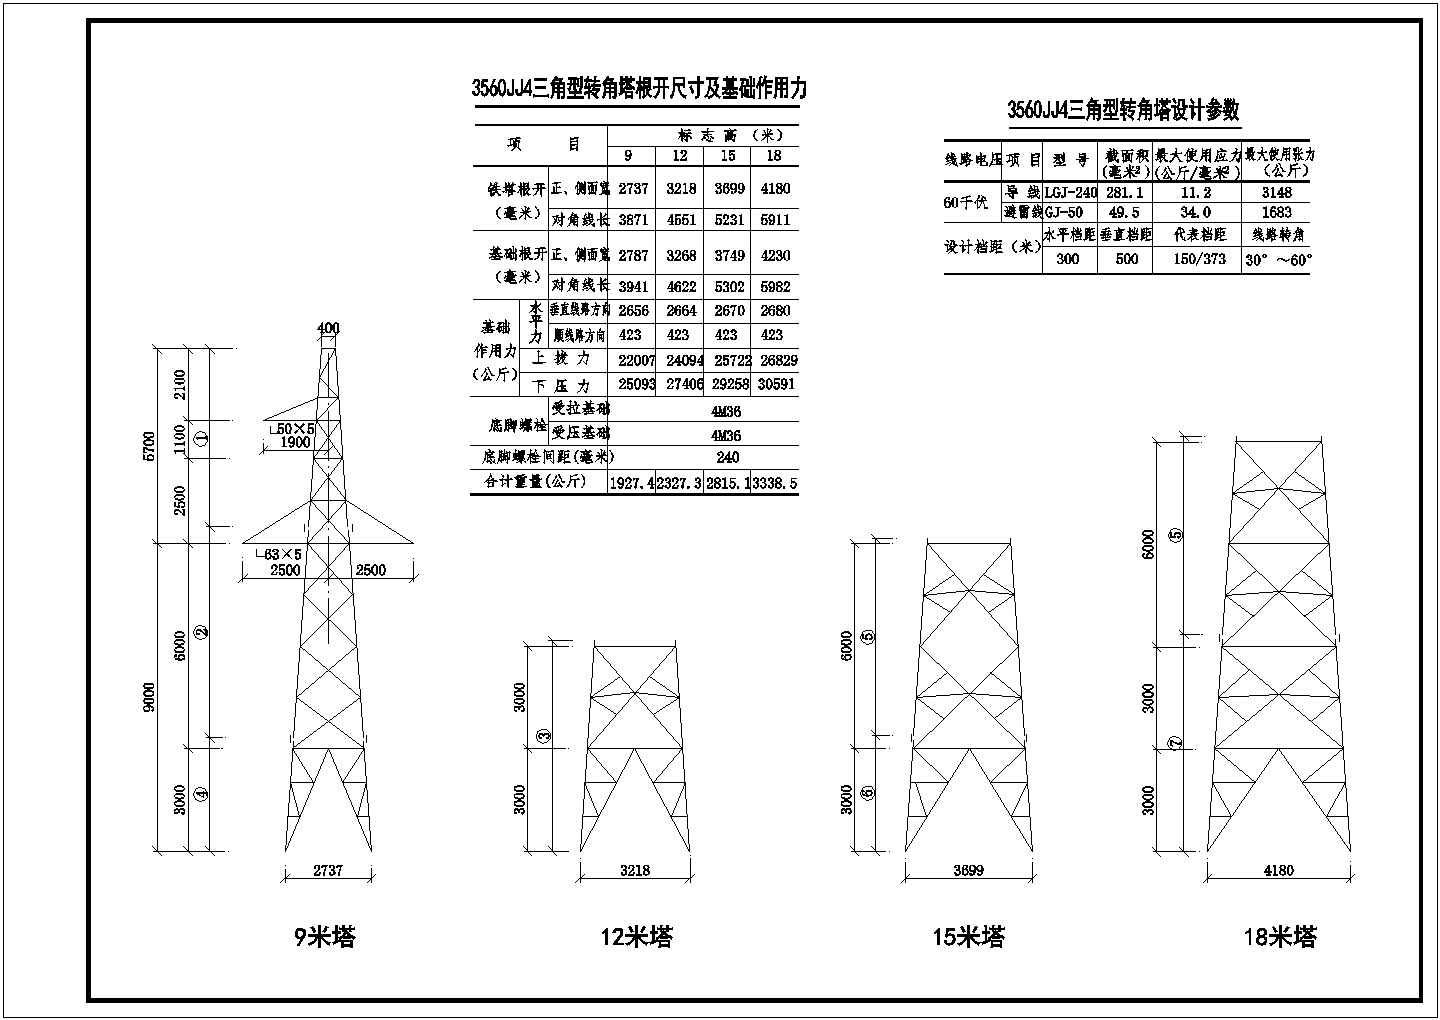 7712(3560JJ4)铁塔全套结构图